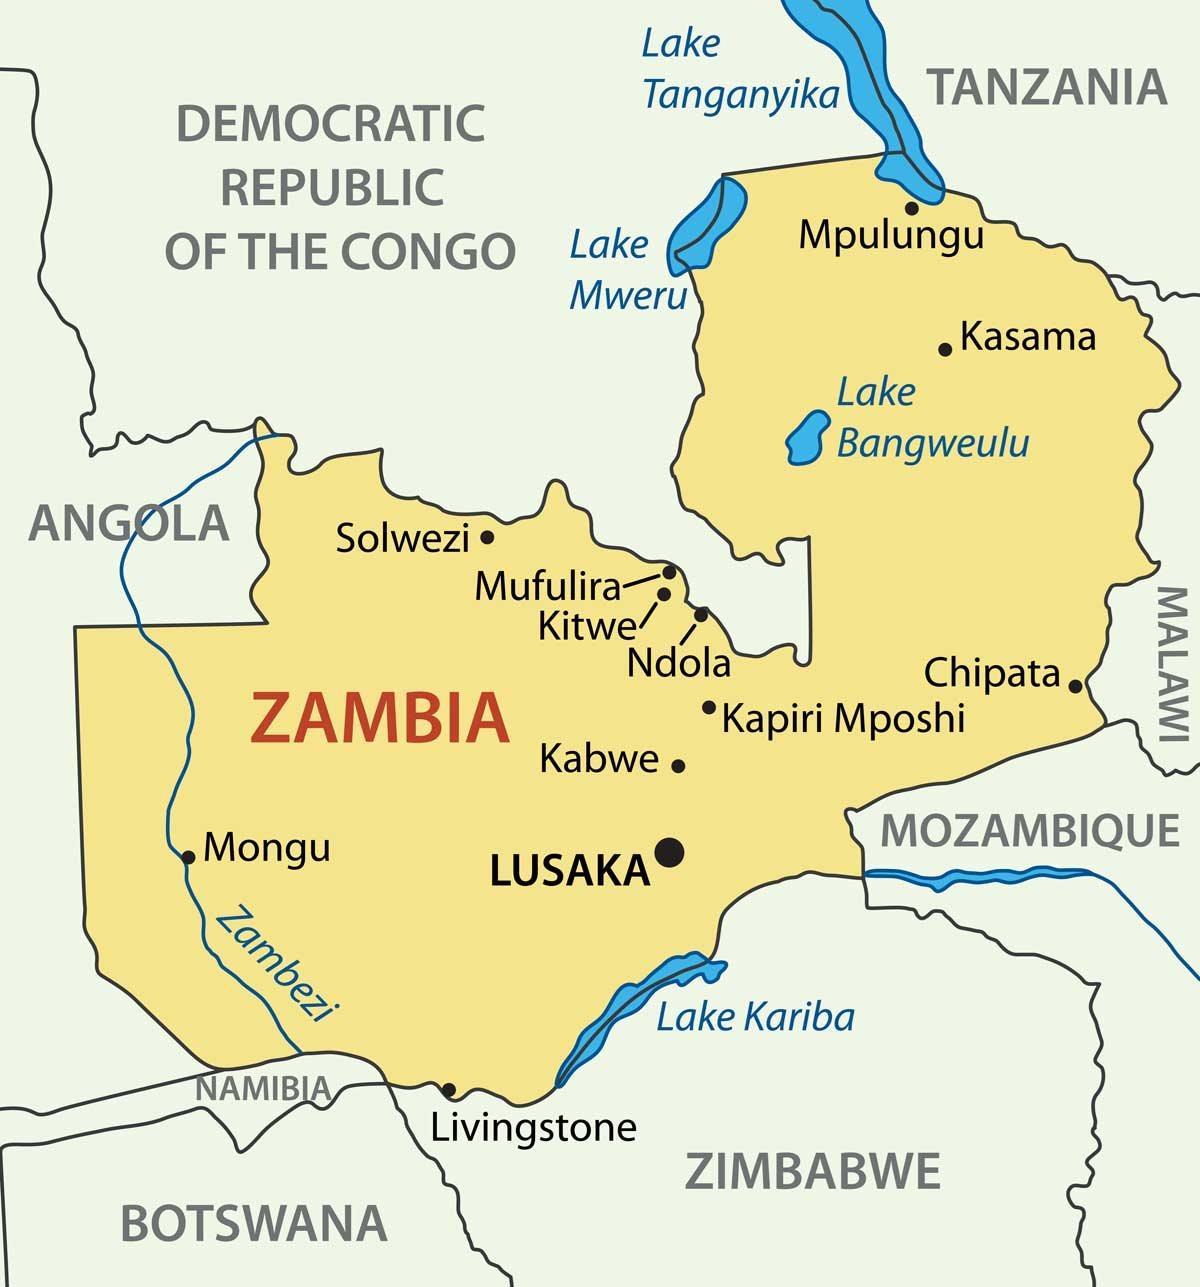 નકશો kitwe ઝામ્બિયા